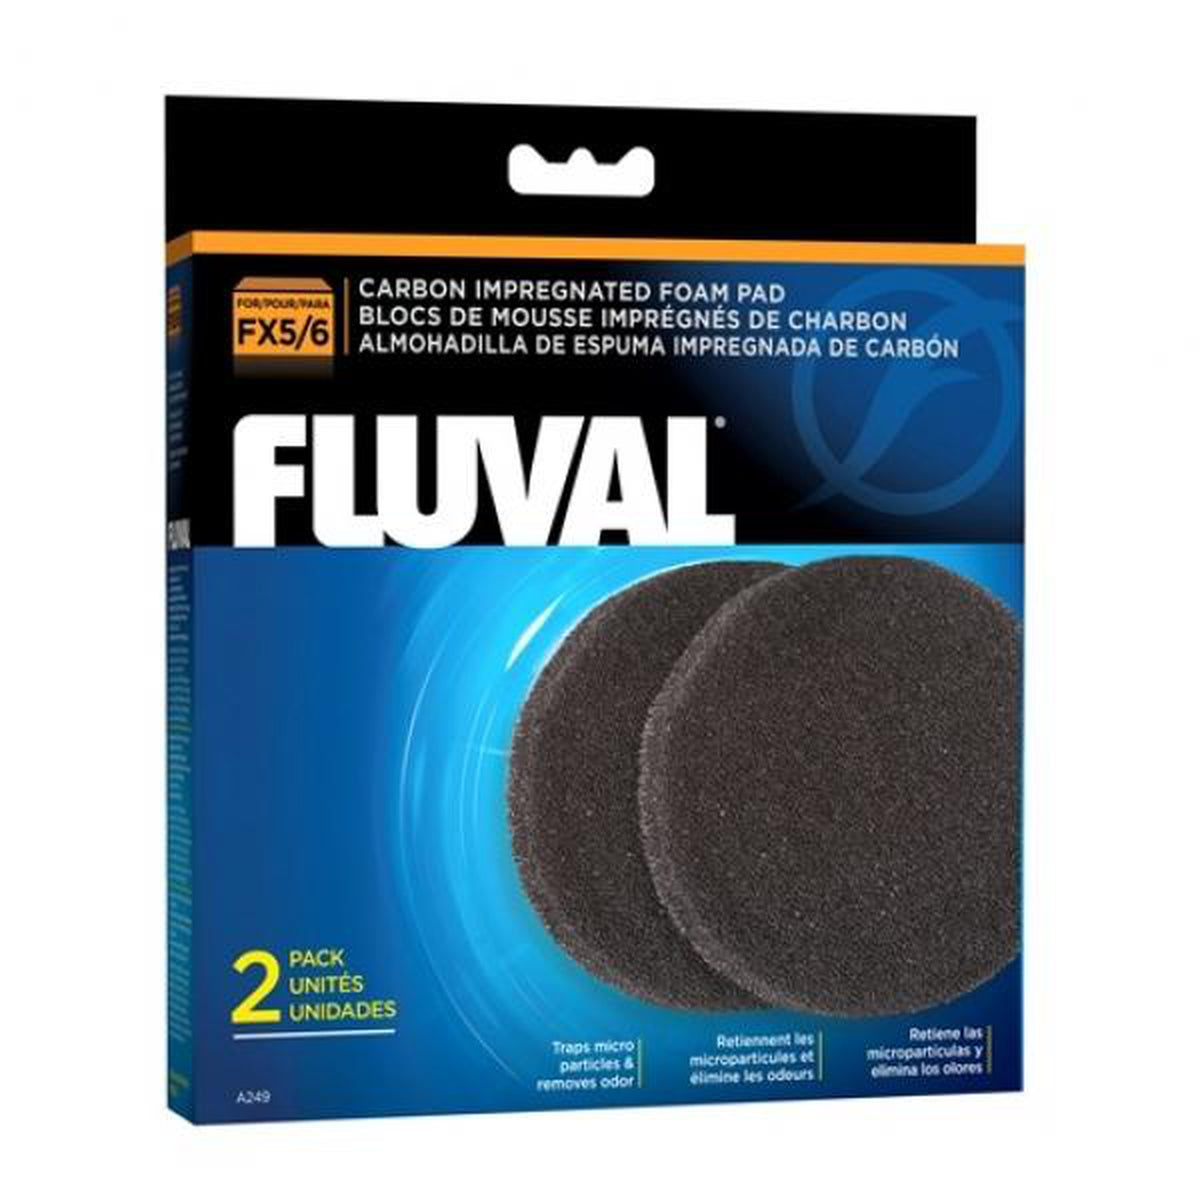 Fluval FX4/5/6 Carbon Impregnated Foam Pad